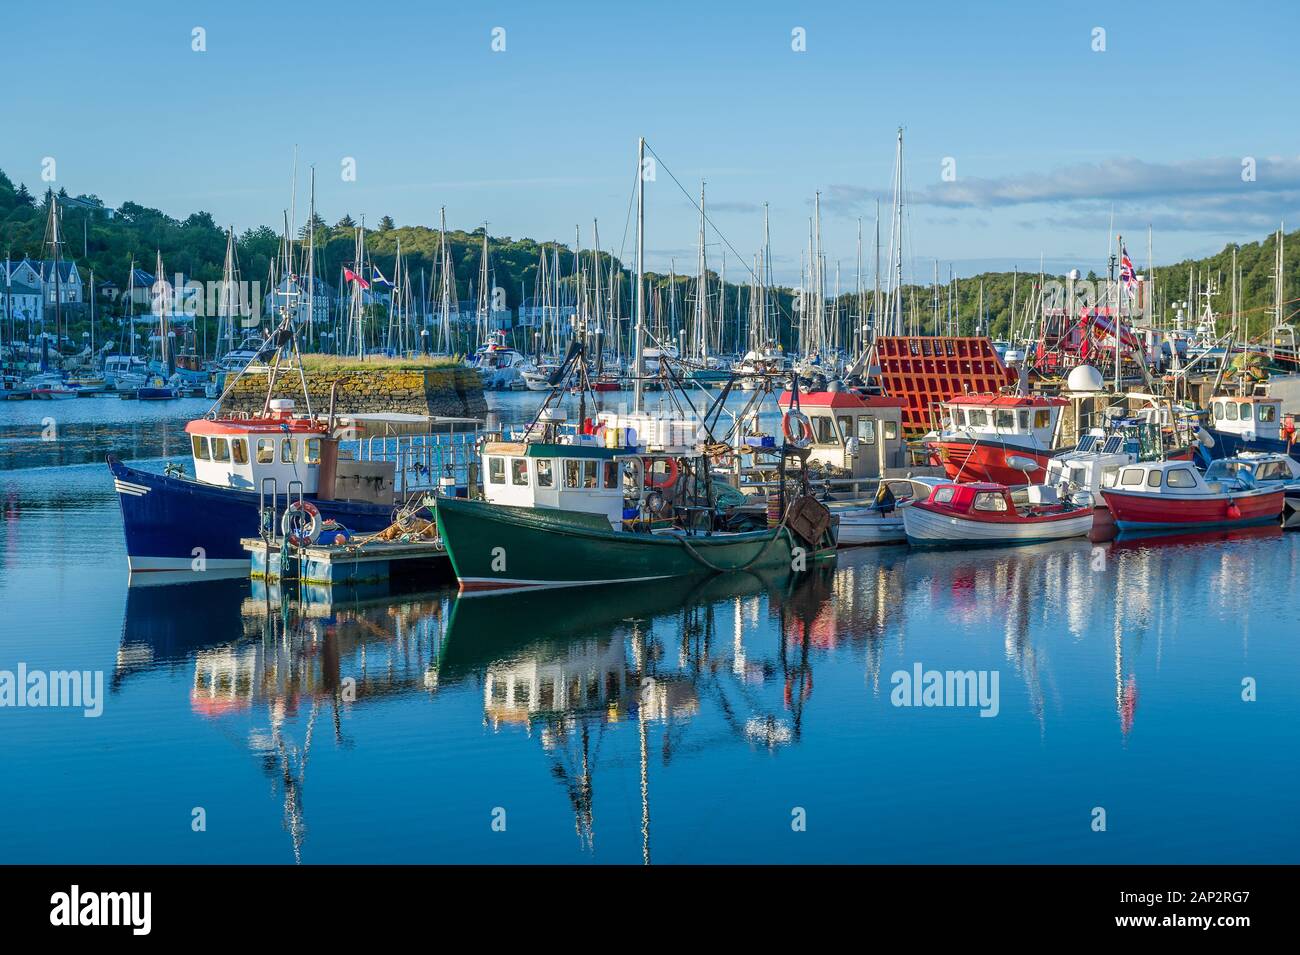 Schönen ruhigen Tag in Tarbert Hafen. Boote Bunte loal und Wasser Reflexionen. Inneren Hebriden in Schottland. Stockfoto